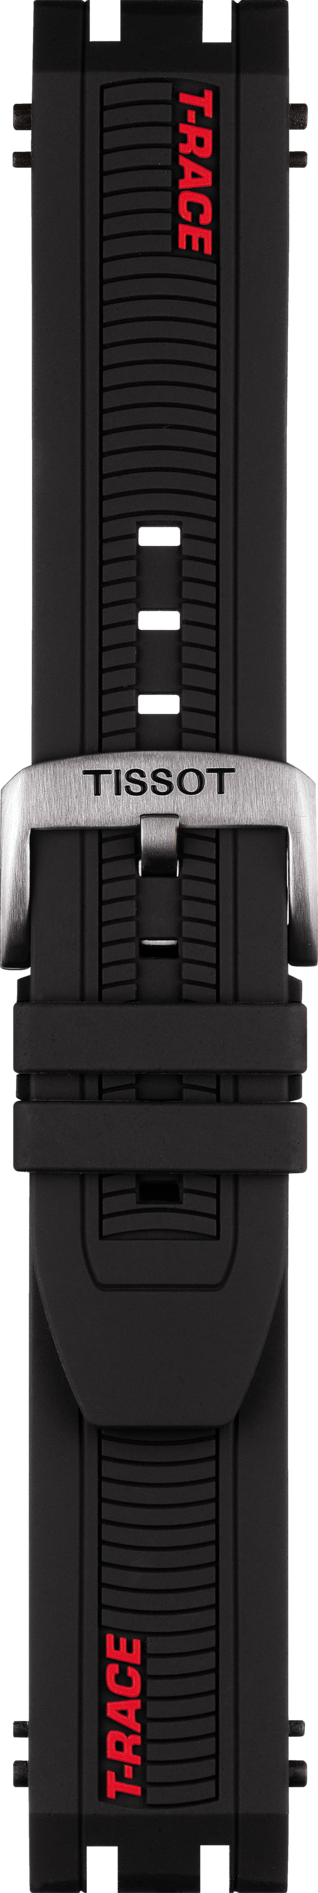 Tissot T-Race Model # T115417 Black Rubber Watch Band - WATCHBAND EXPERT